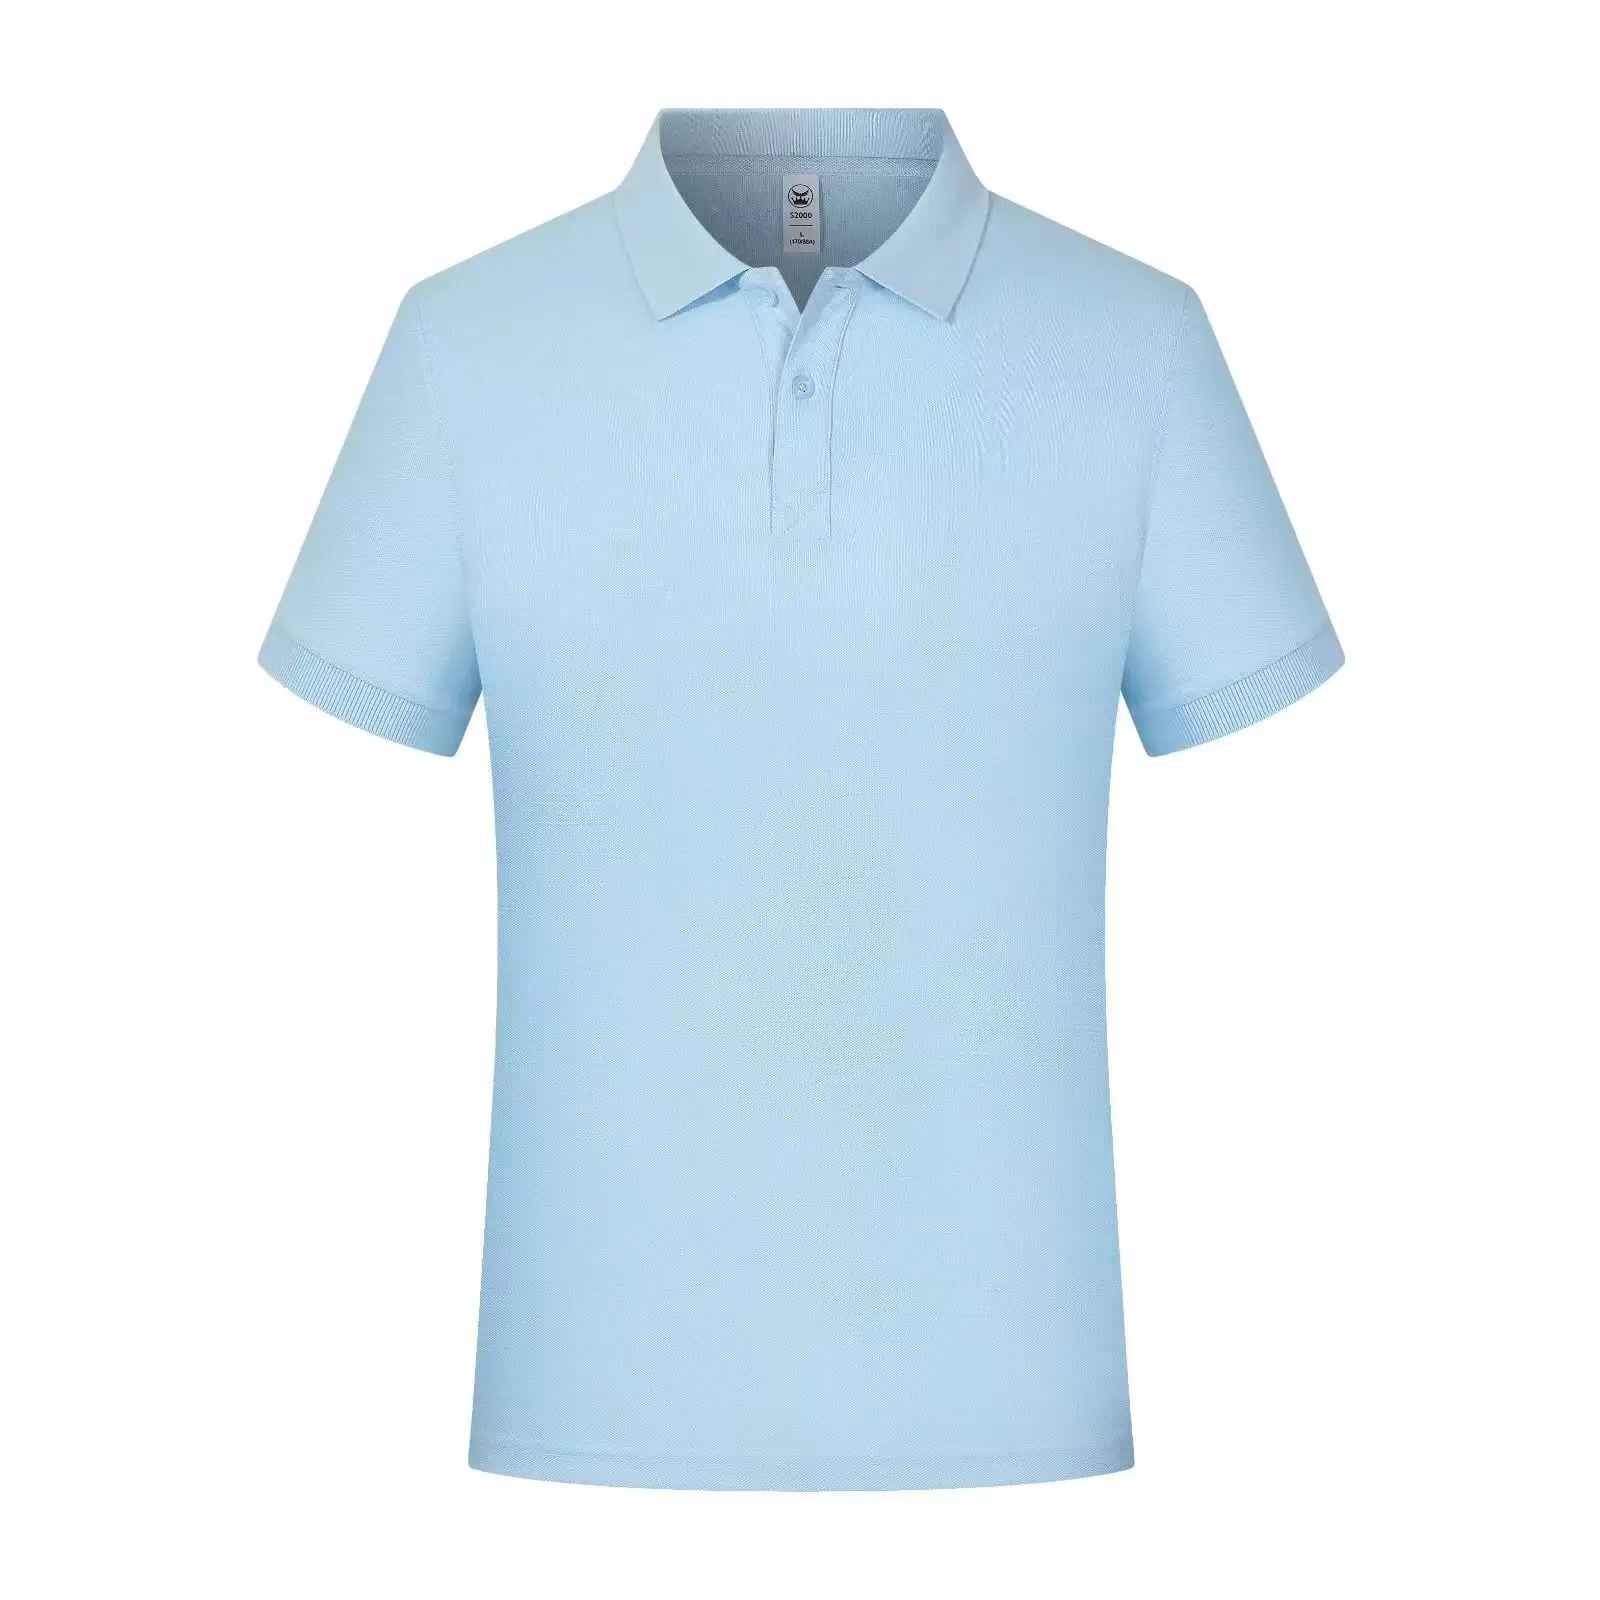 Oem Groothandel Unisex Polo T Shirts Mannen Katoenen Custom Poloshirts Korte Mouw Polo Shirts Hoge Kwaliteit